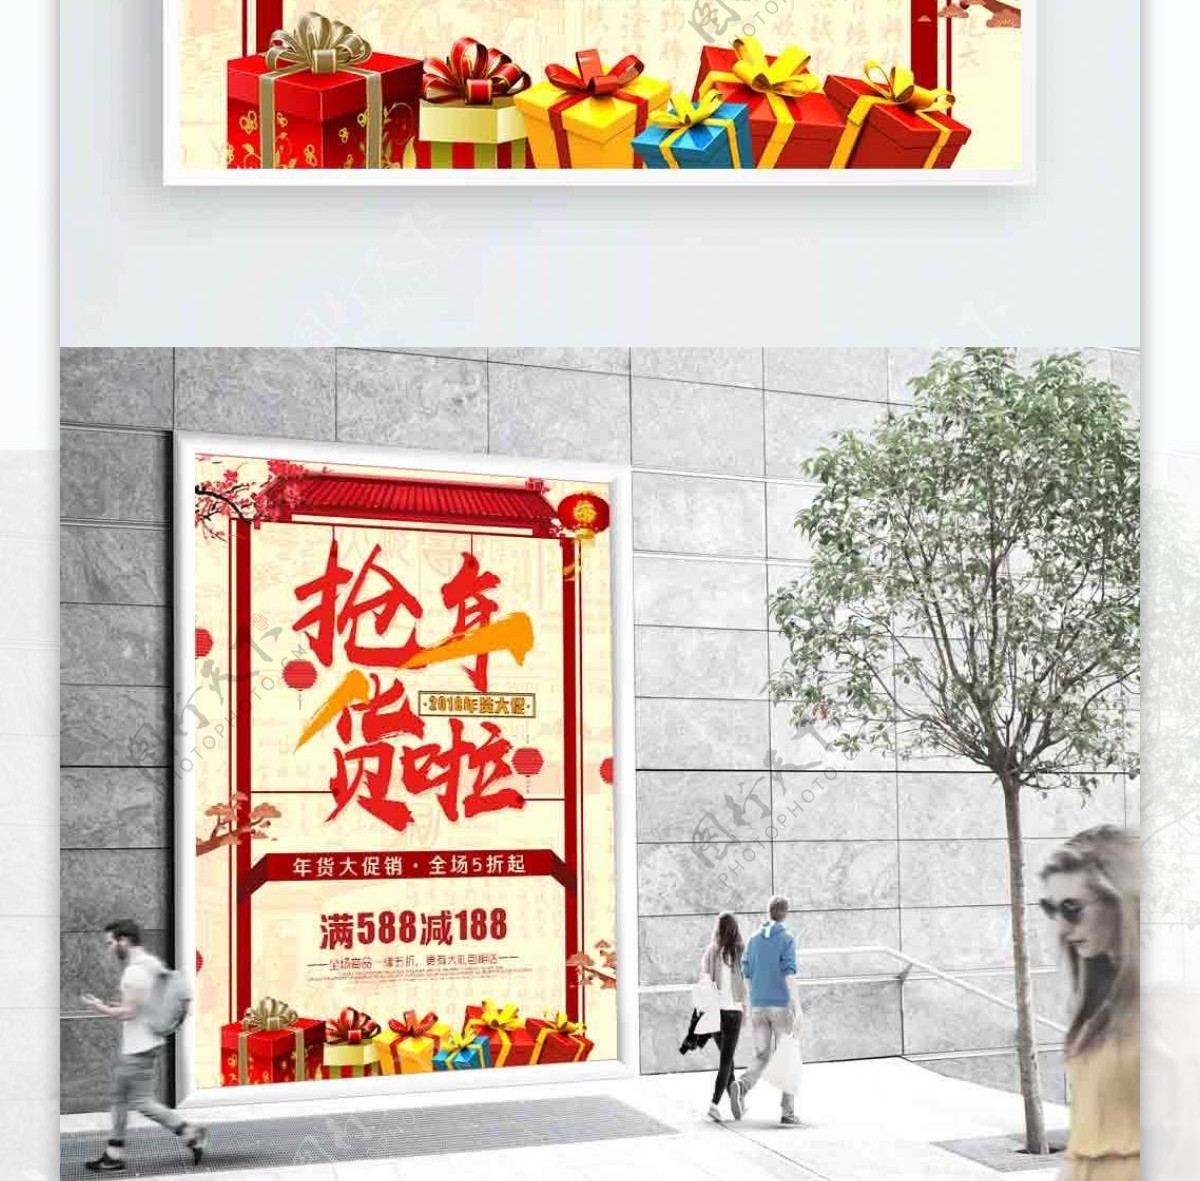 中国风年货节海报设计